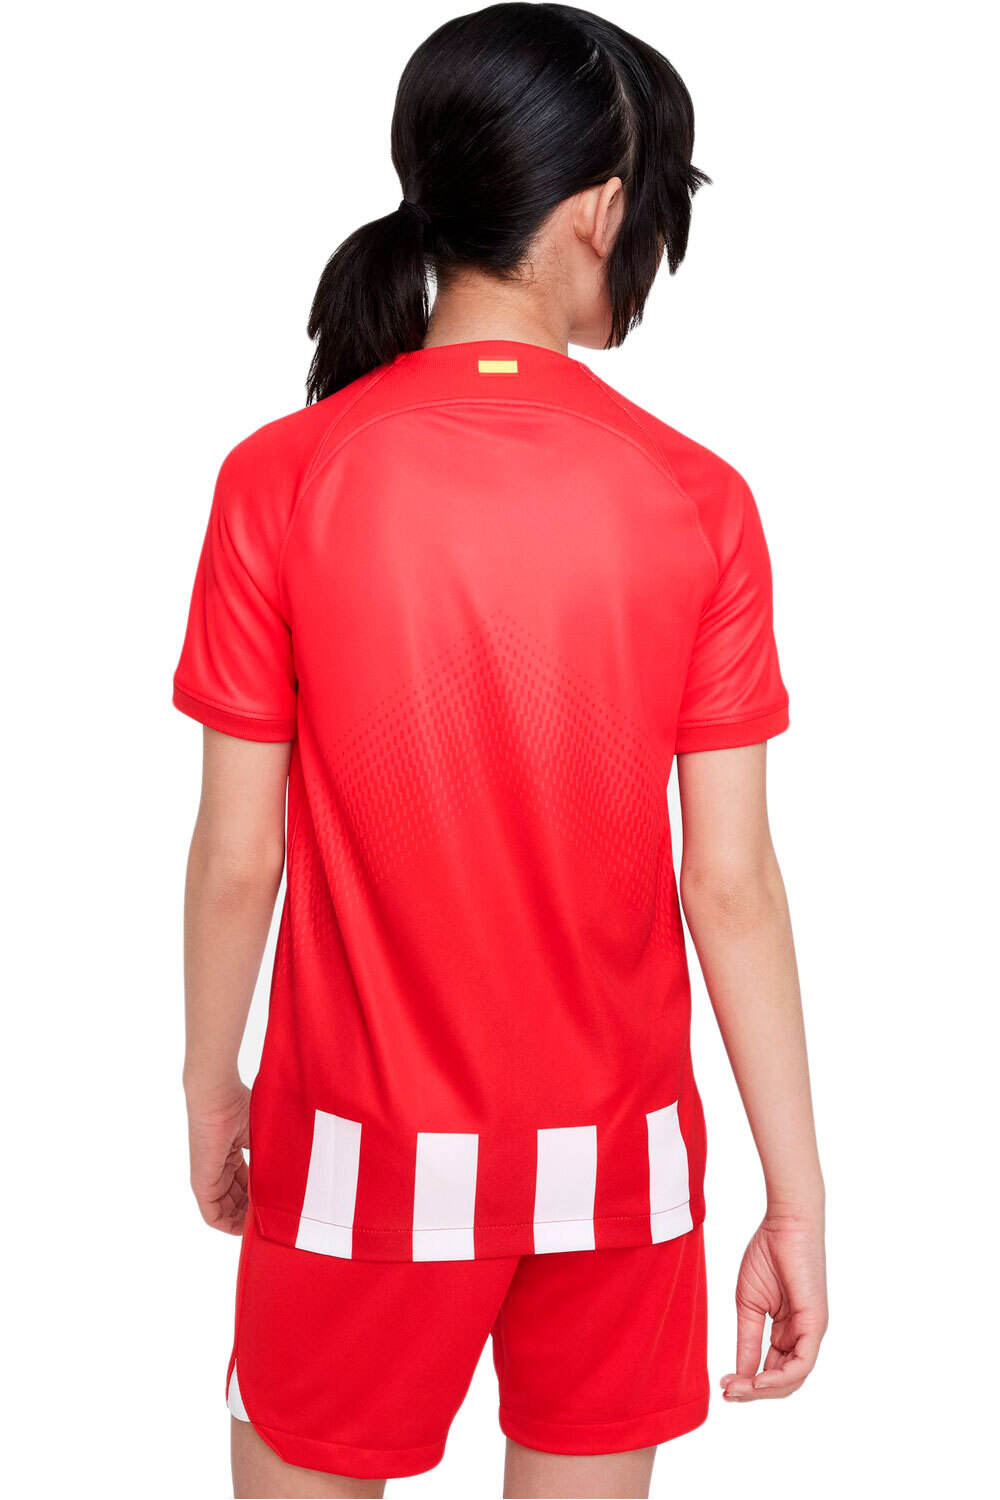 Nike camiseta de fútbol oficiales niño AT.MADRID 24 Y NK DF STAD JSY SS HM vista trasera